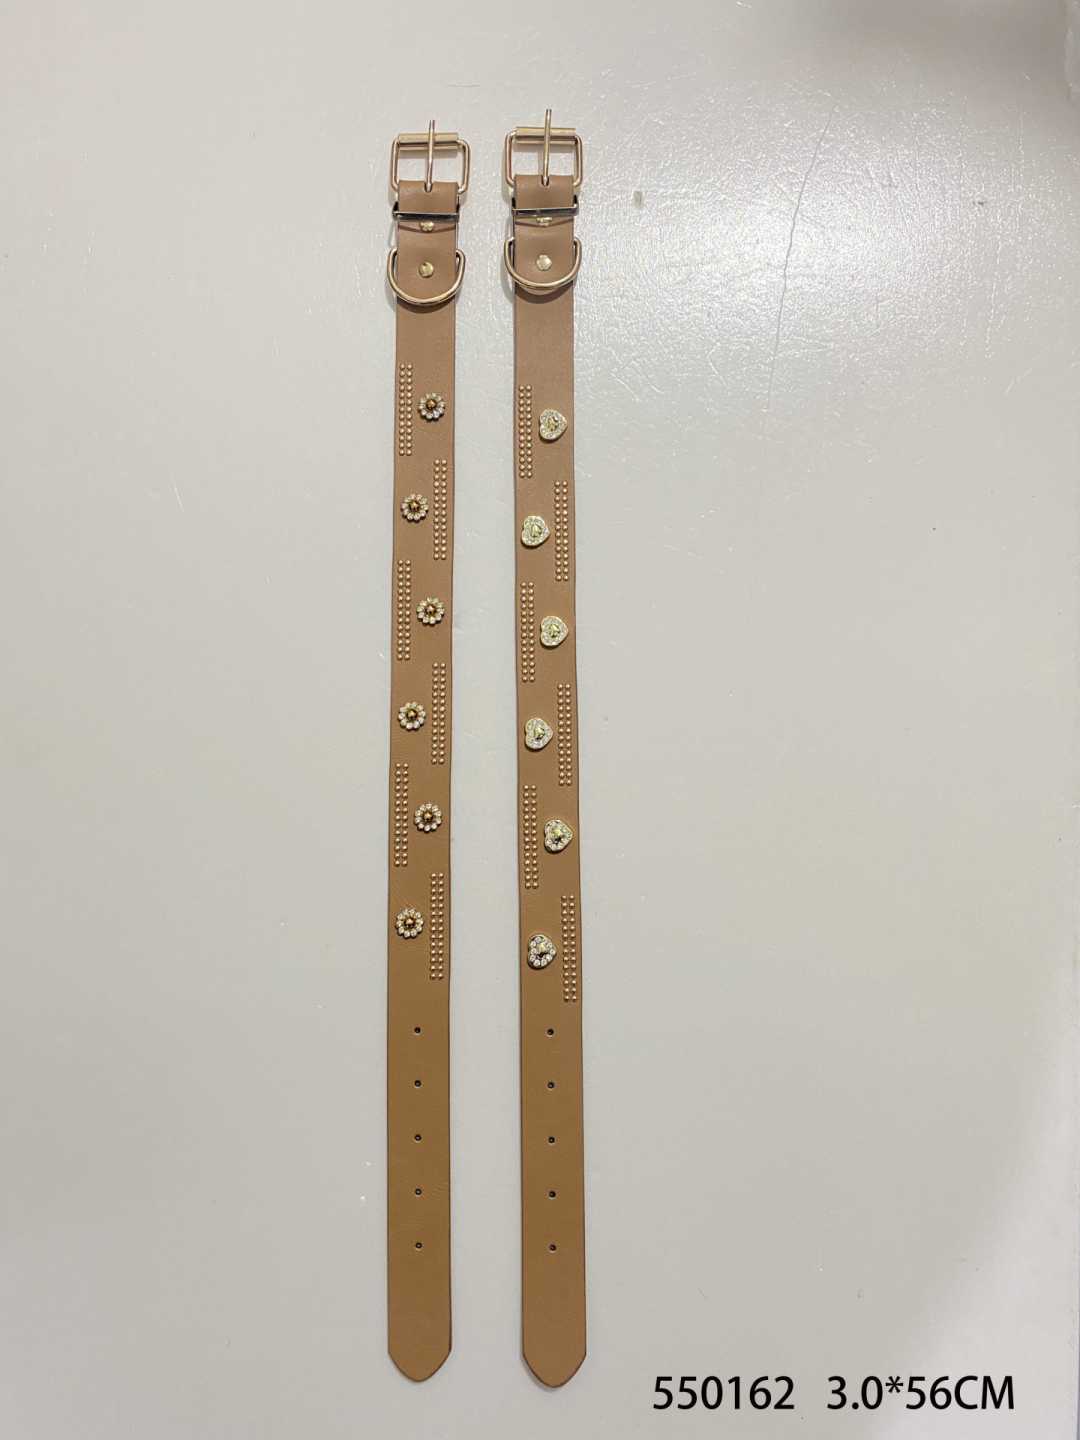 Collar - Dog collar - 3x56cm - 550162